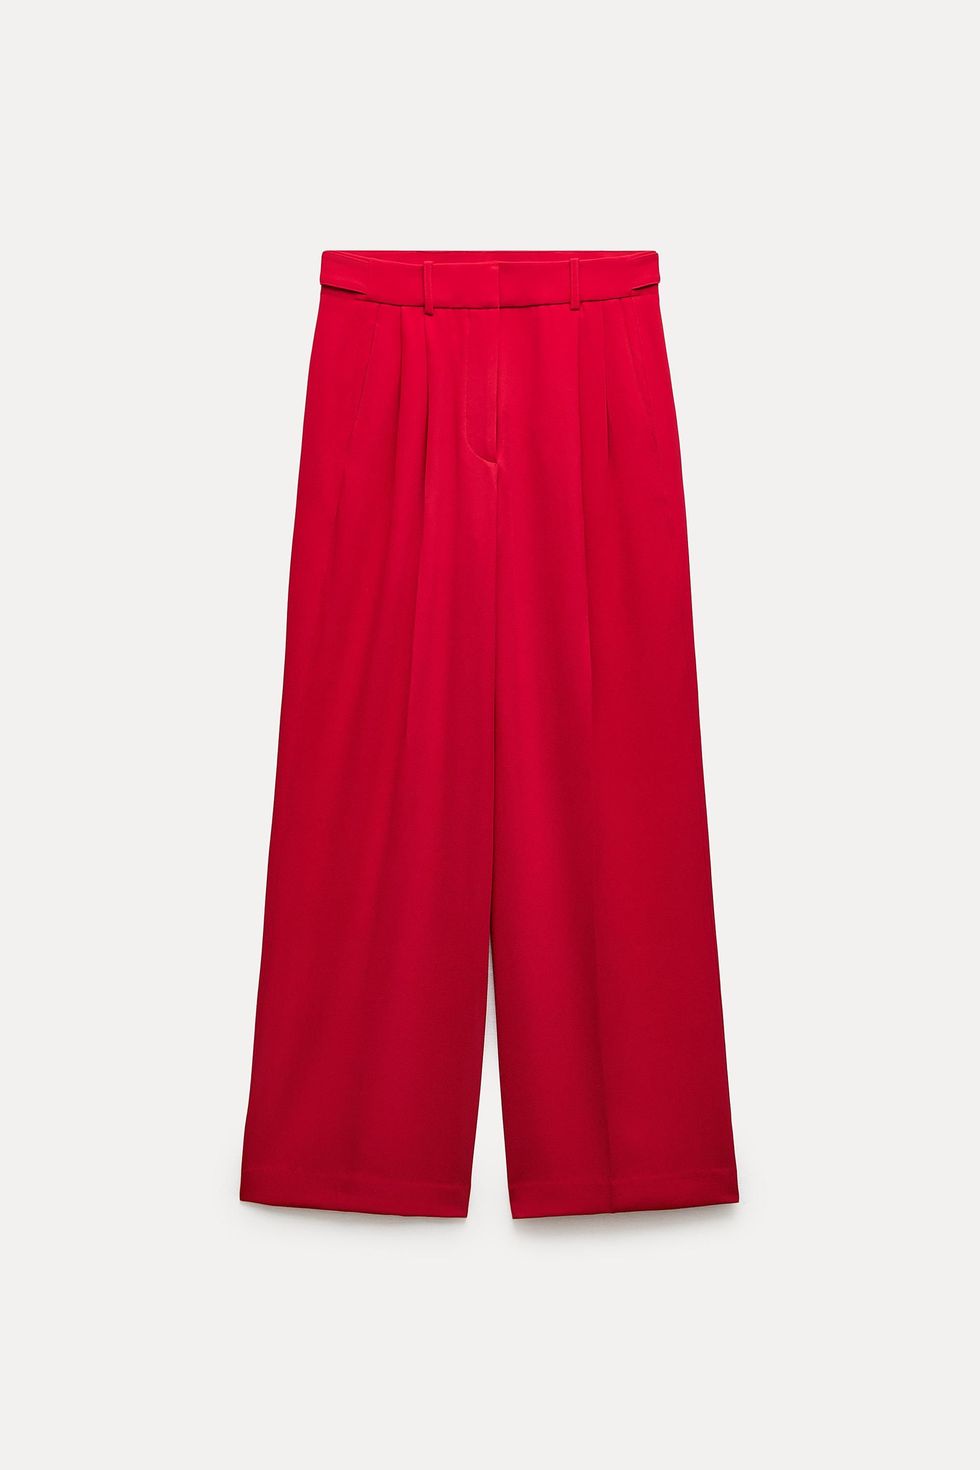 Pantalón ancho rojo